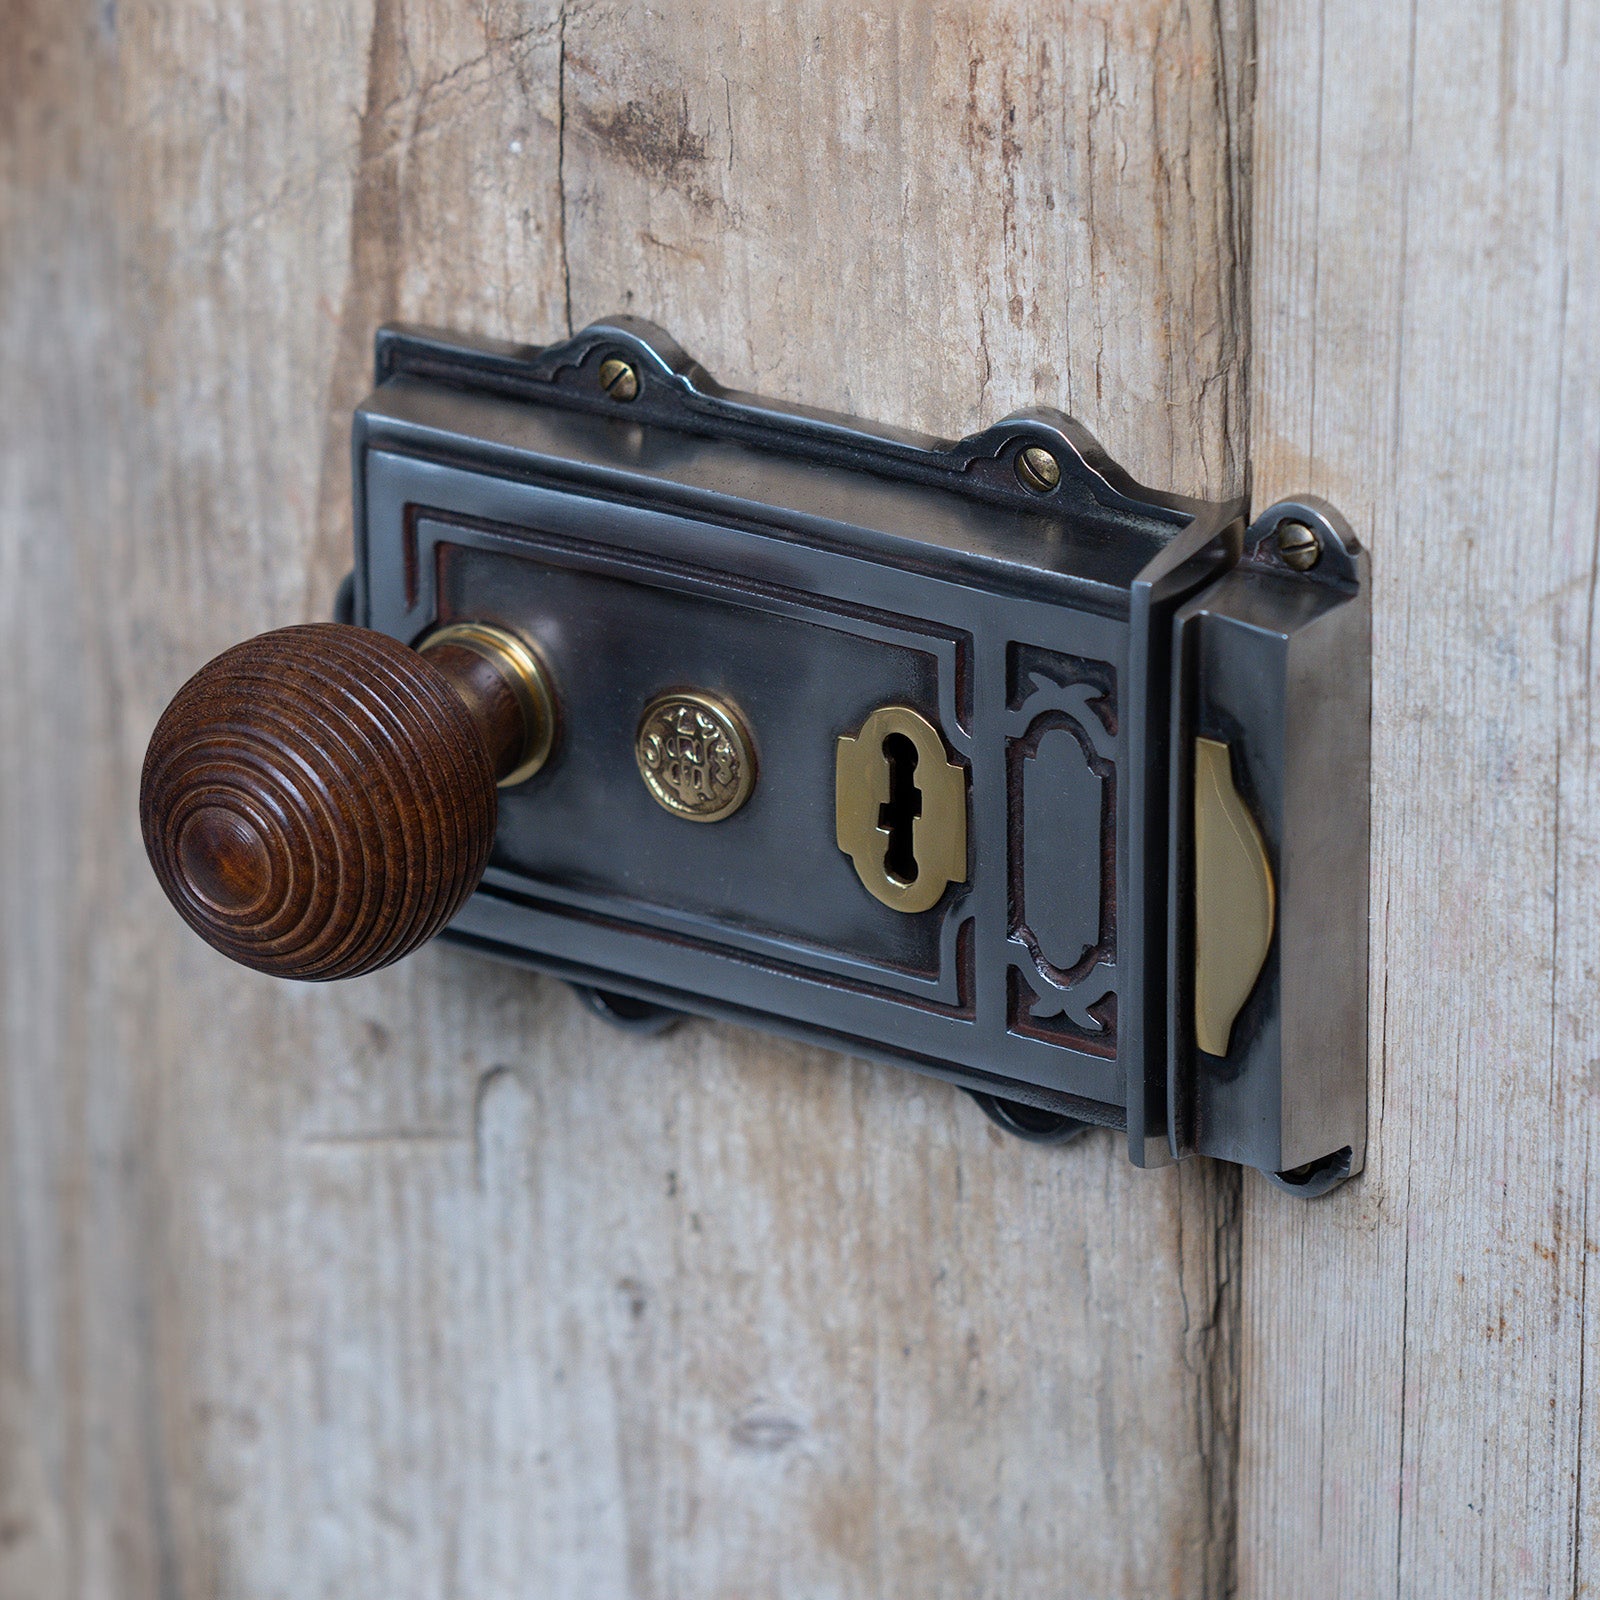 SHOW Lifestyle image of Ornate Iron Rim Lock on wood